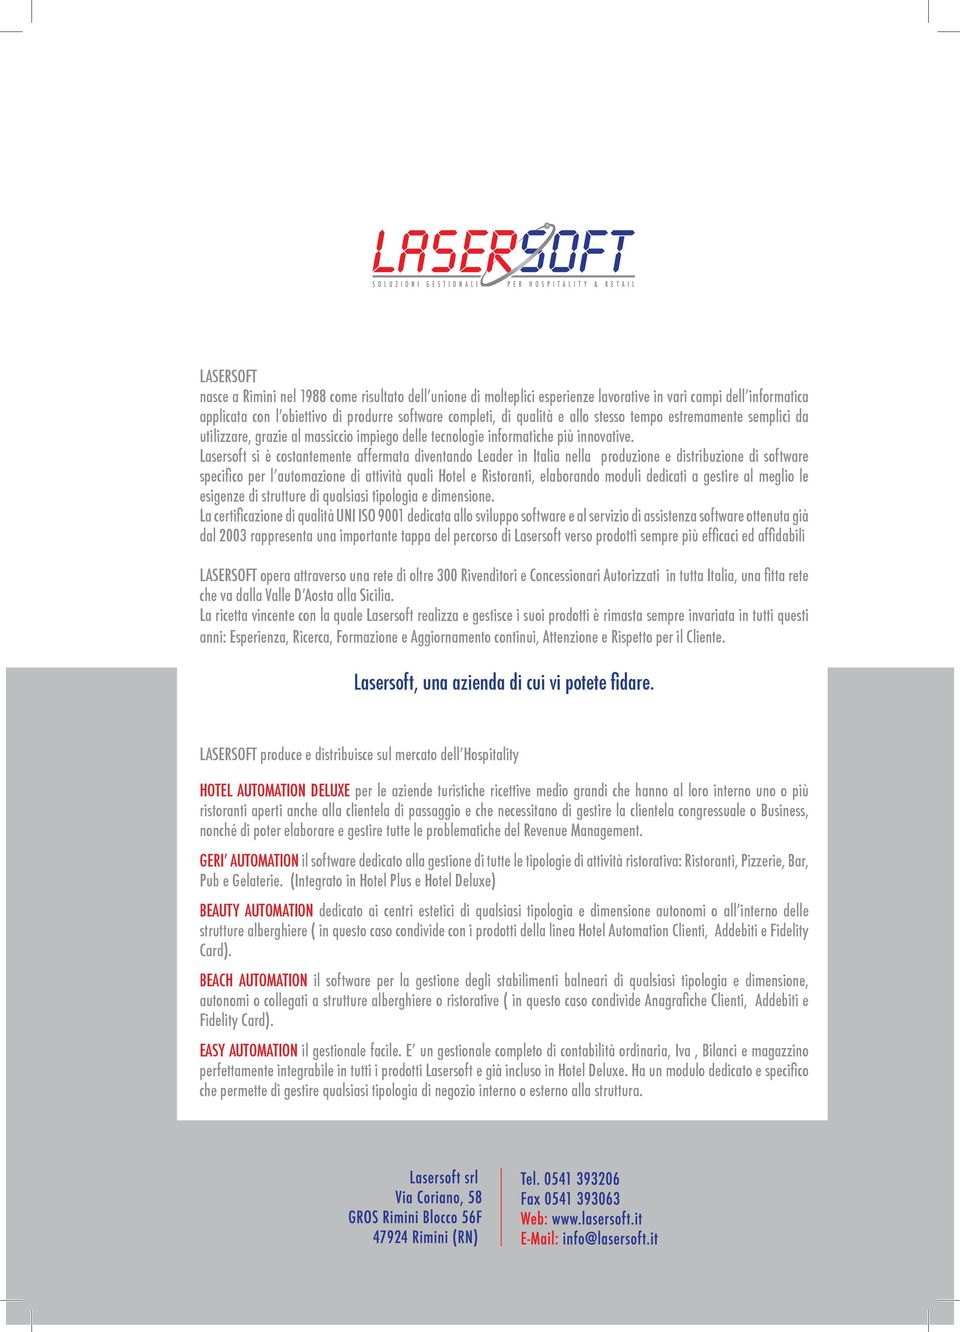 Lasersoft si è costantemente affermata diventando Leader in Italia nella produzione e distribuzione di software specifico per l automazione di attività quali Hotel e Ristoranti, elaborando moduli